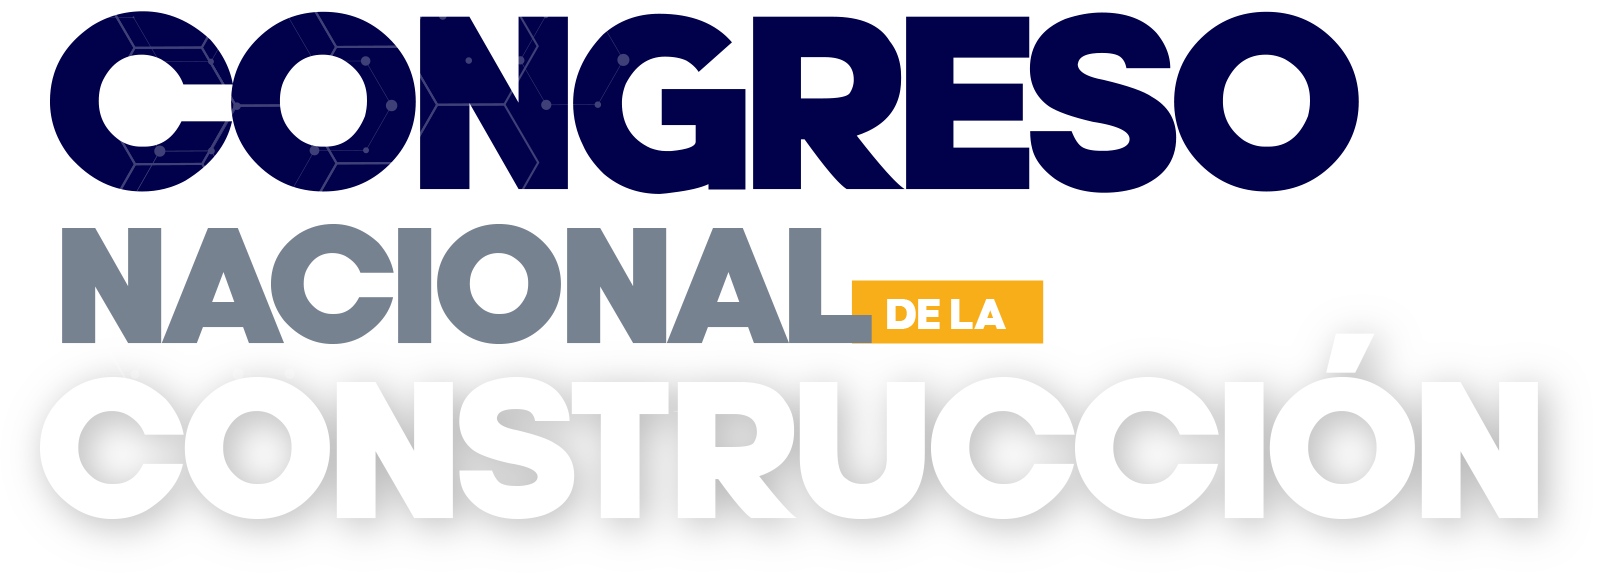 Congreso Nacional de la Construcción